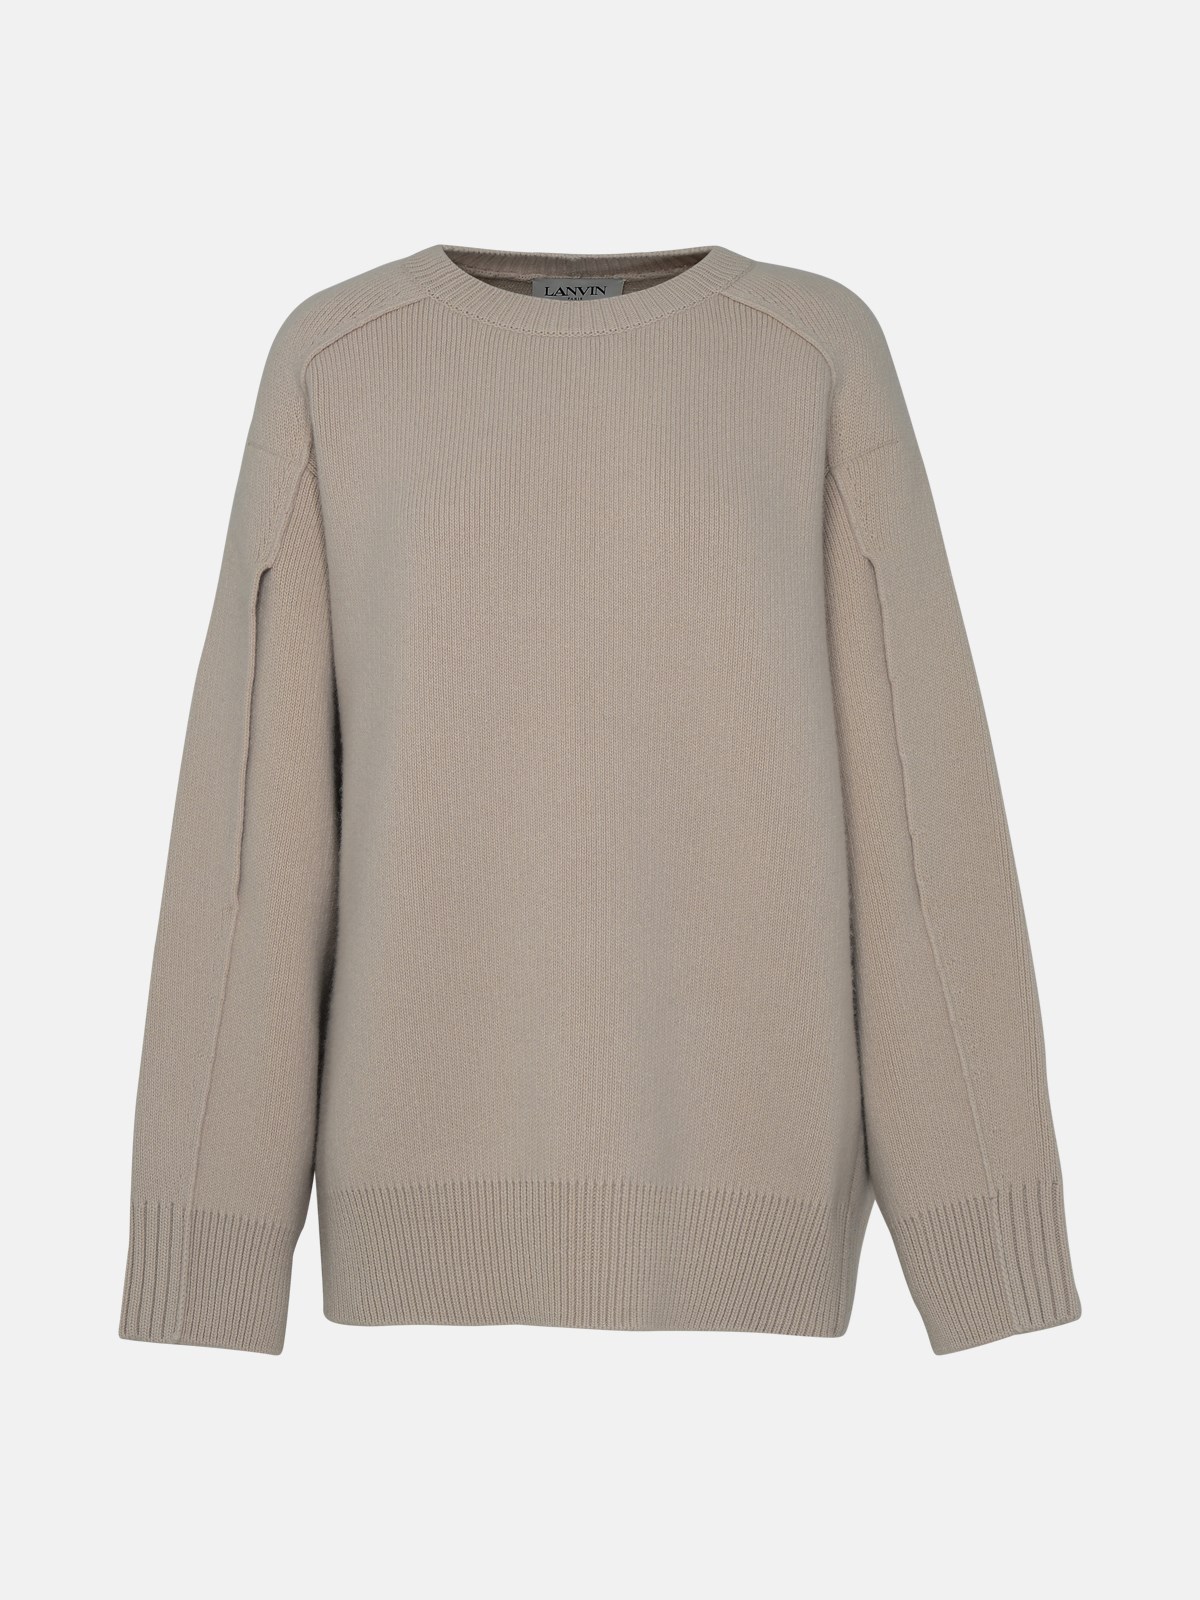 Lanvin Black Cashmere Blend Sweater In Cream